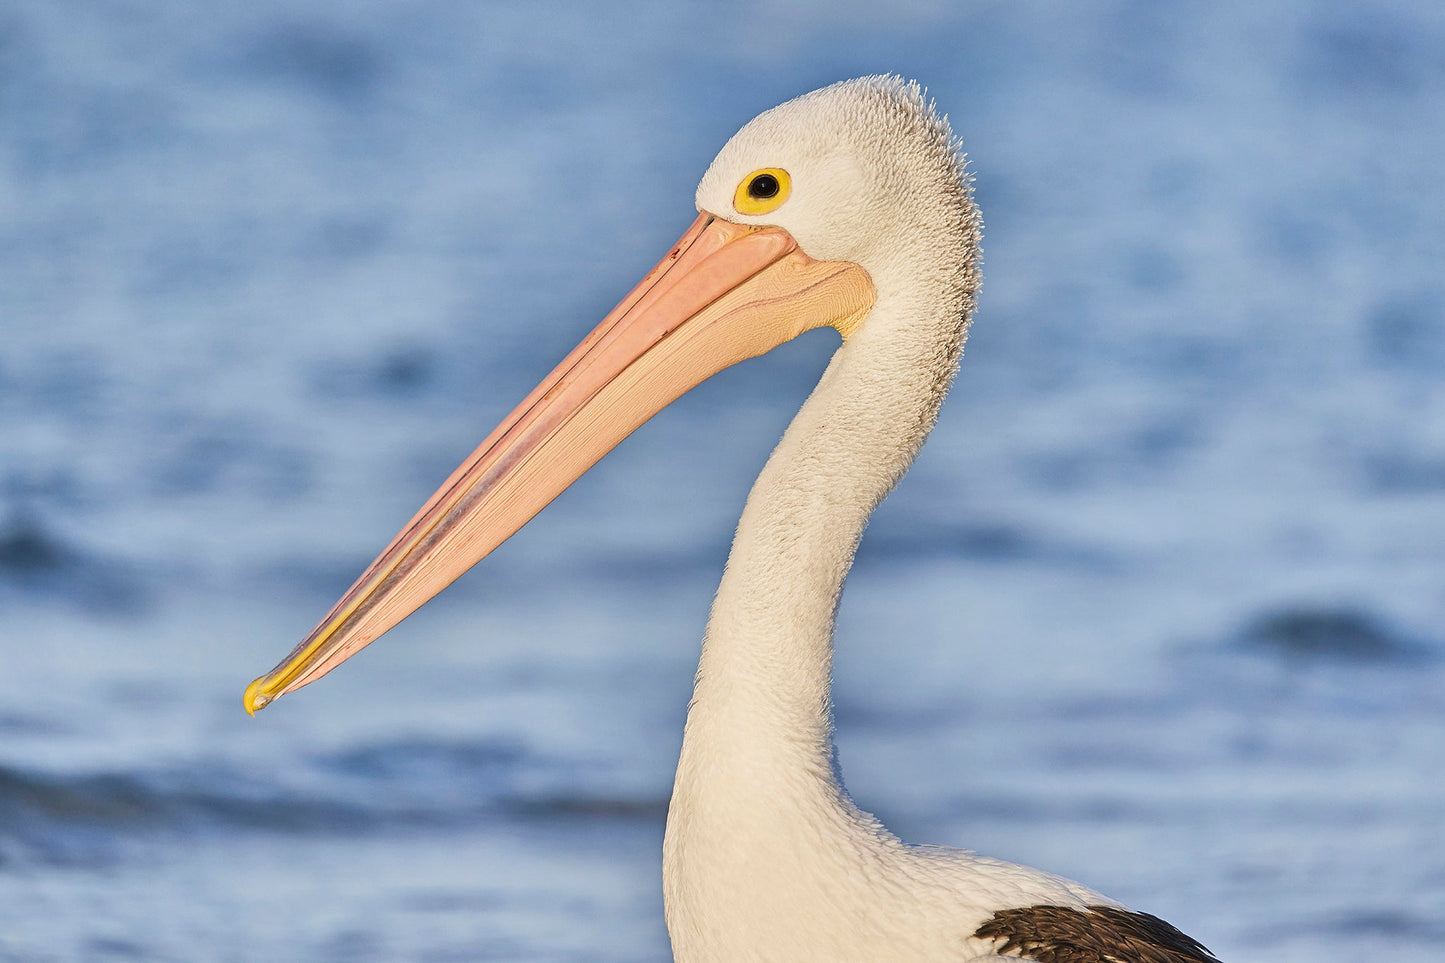 Stand proud - Pelican, Burrum Heads Queensland